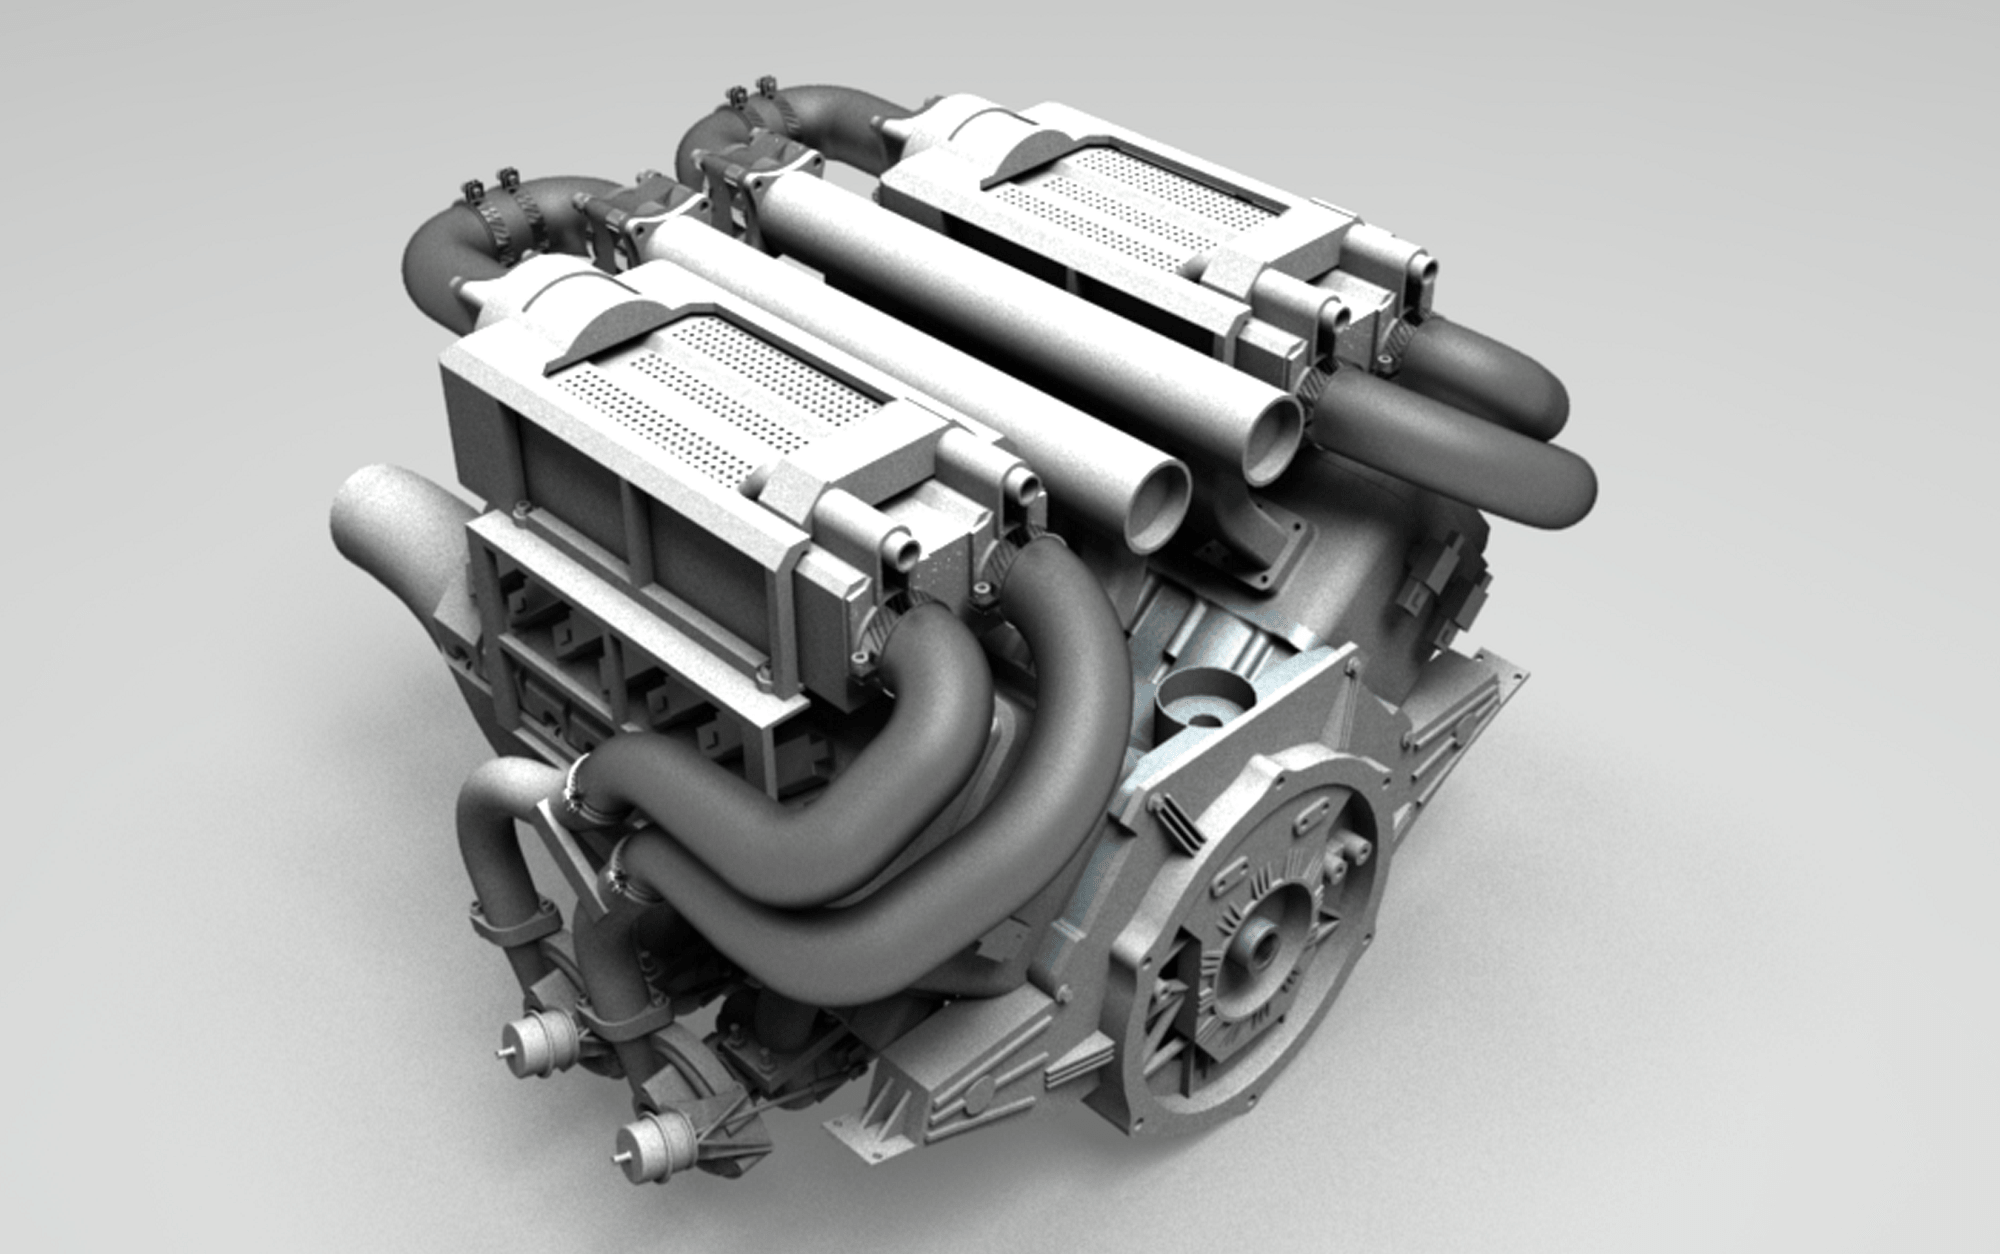 طراحی موتور بوگاتی | مدل طراحی شده موتور 16 سیلندر بوگاتی